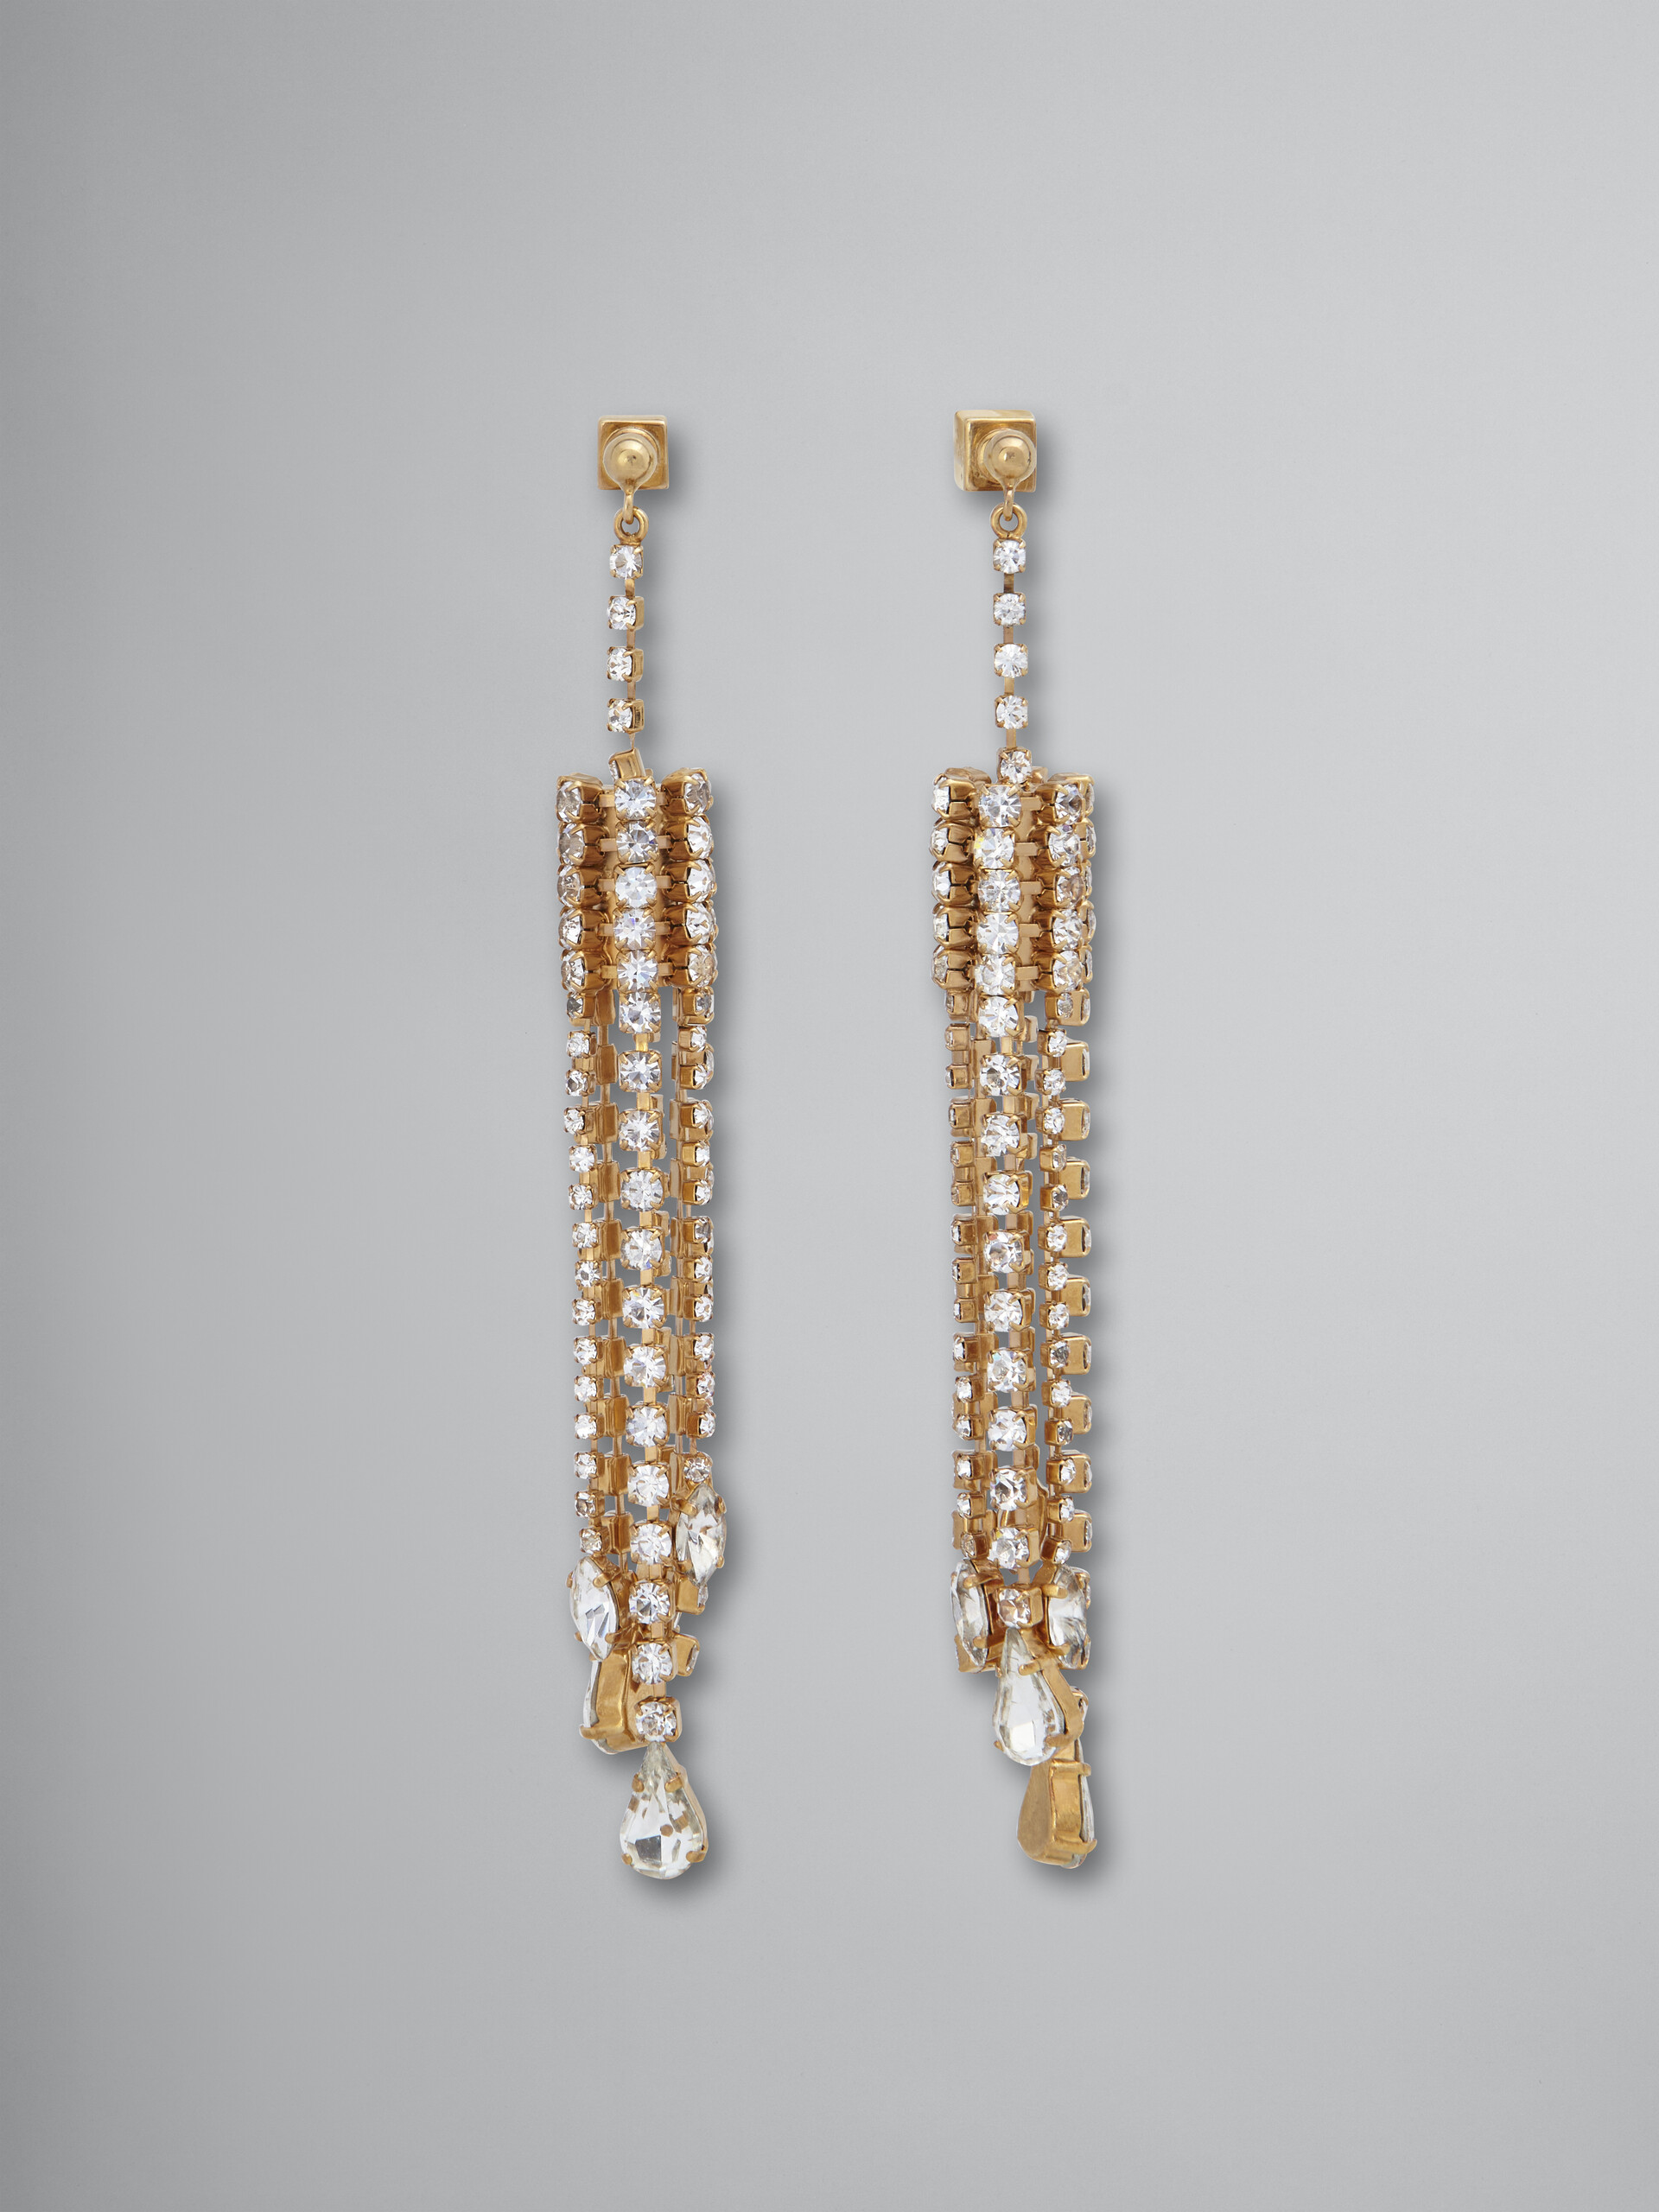 Brass SPARKLE chandelier earrings - Earrings - Image 1